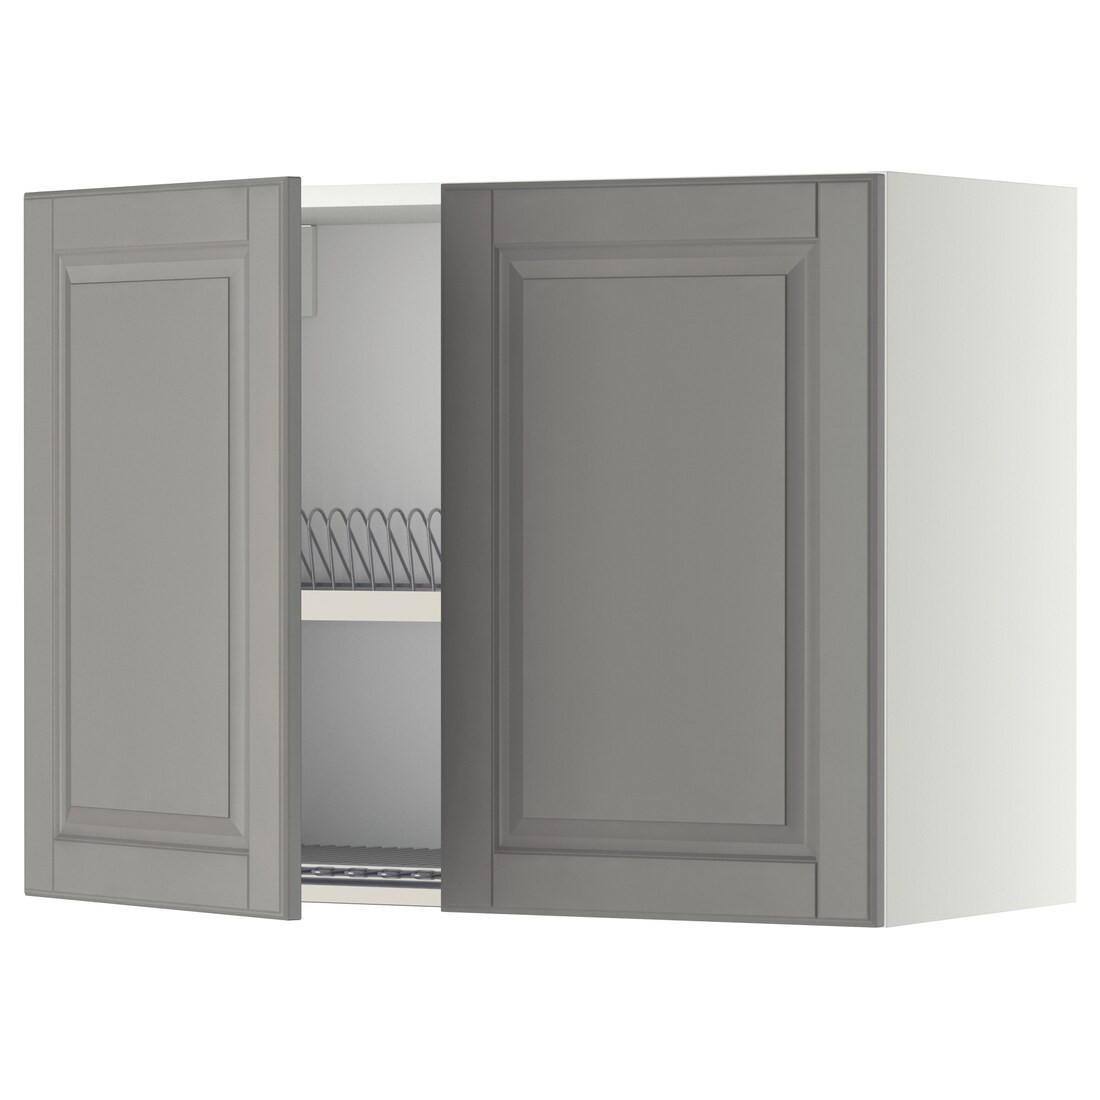 IKEA METOD МЕТОД Навесной шкаф с посудной сушилкой / 2 дверцы, белый / Bodbyn серый, 80x60 см 19456938 | 194.569.38